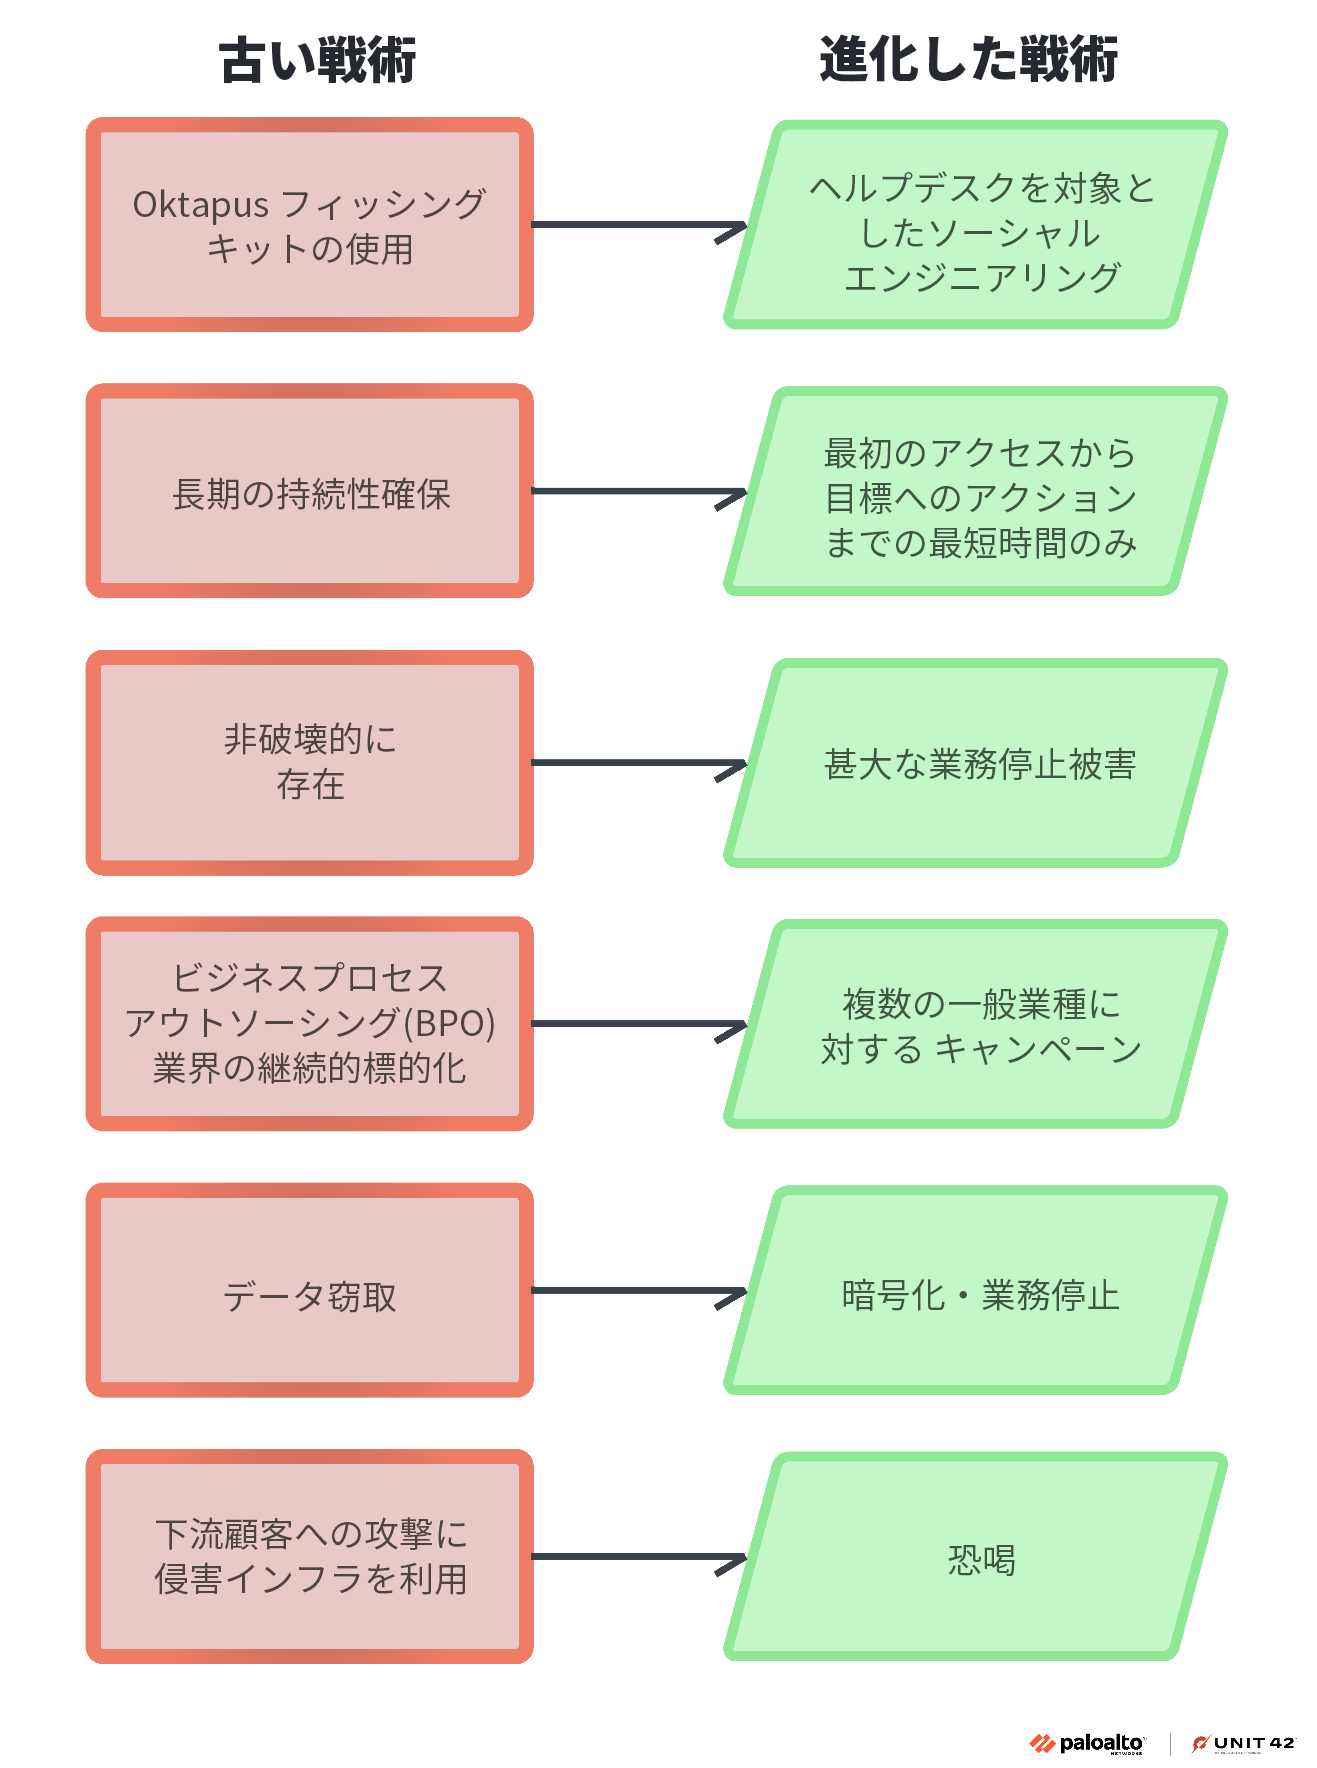 画像 1 は、Muddled Libra の進化した戦術を示す 6 つの部分からなる図です。古い戦術は赤い矩形で、新しい戦術は緑の矩形で表示しています。 